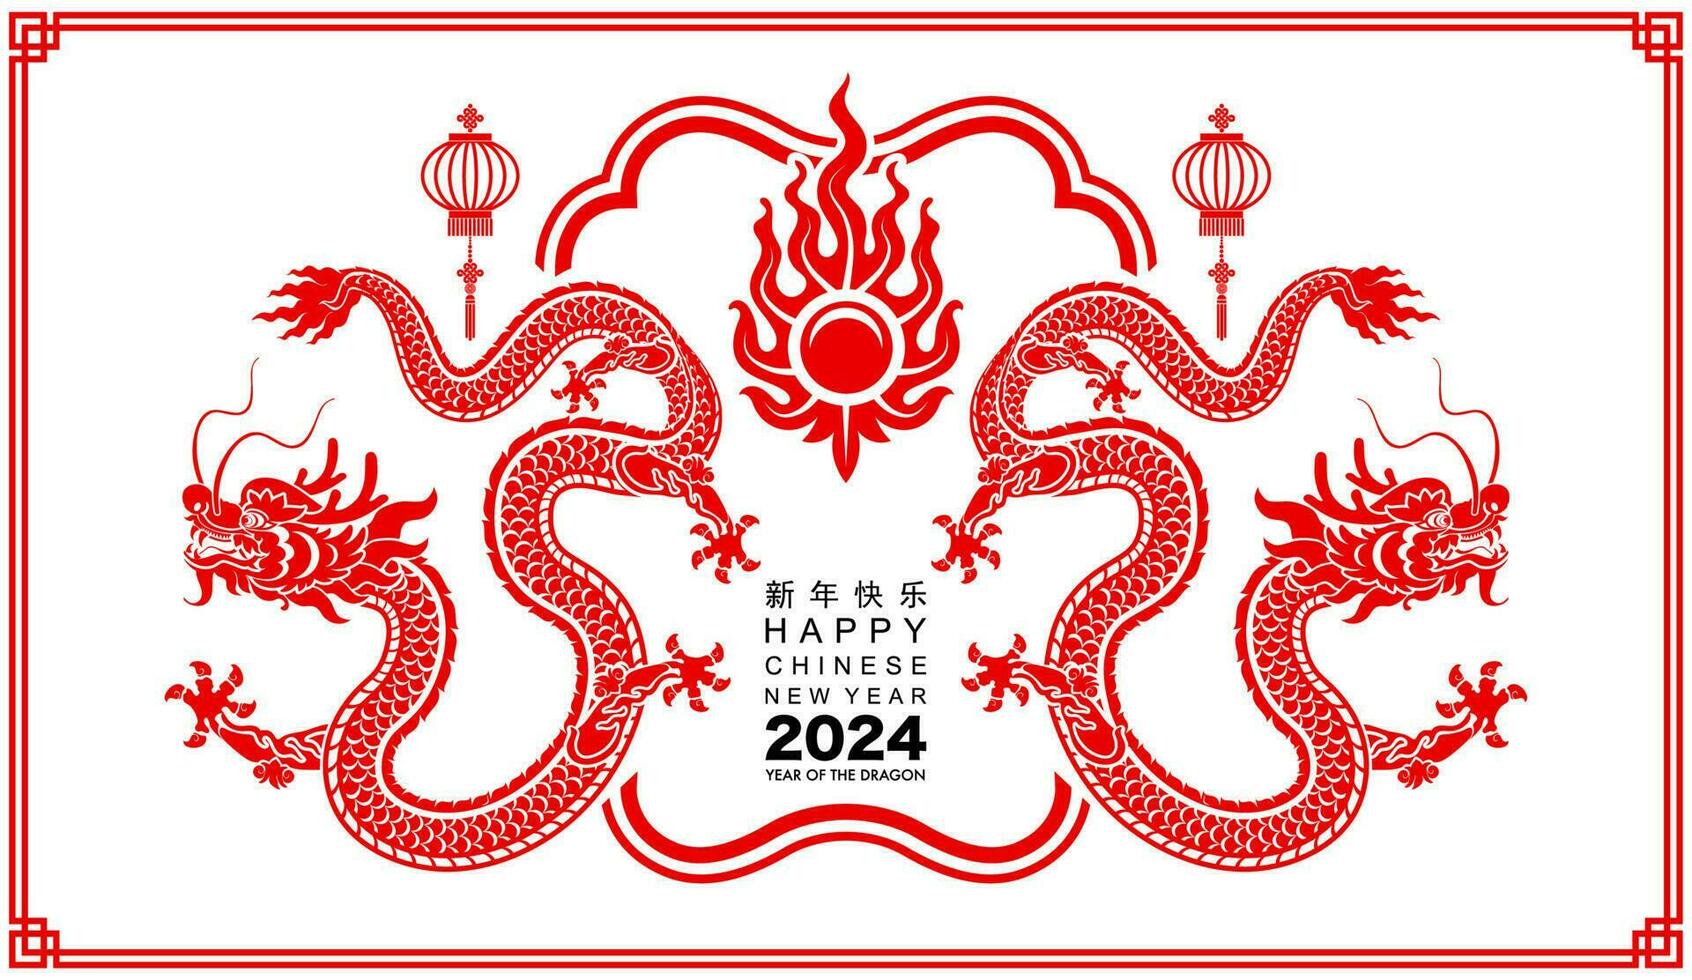 contento chino nuevo año 2024 el continuar zodíaco firmar vector